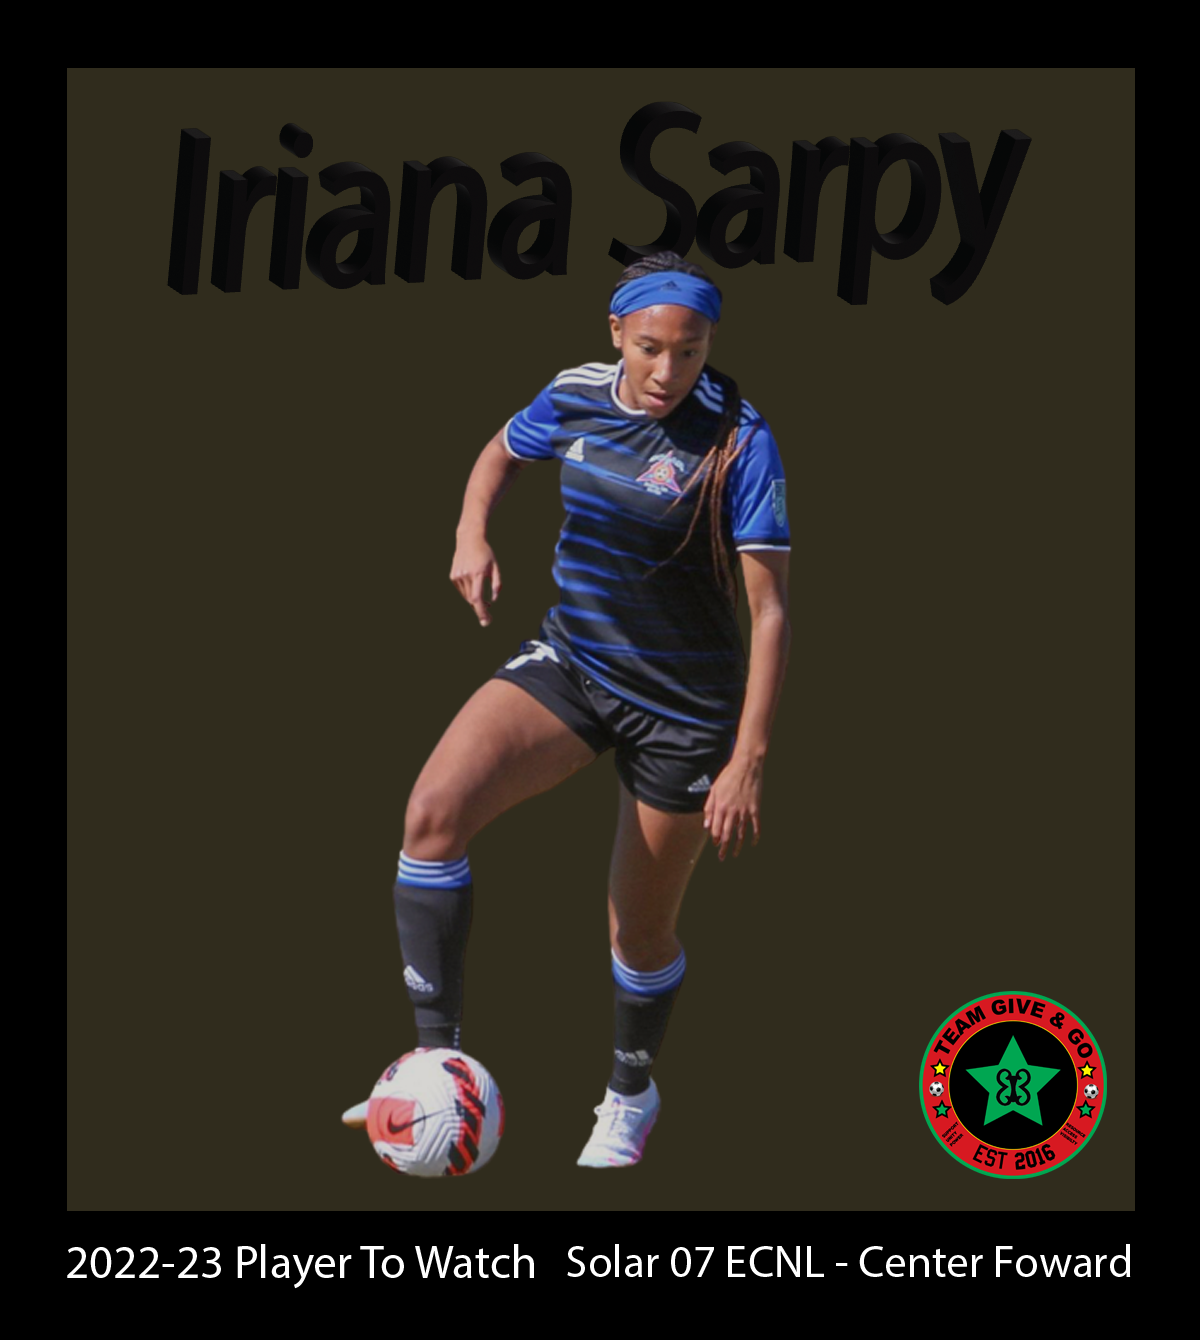 Iriana Sarpy